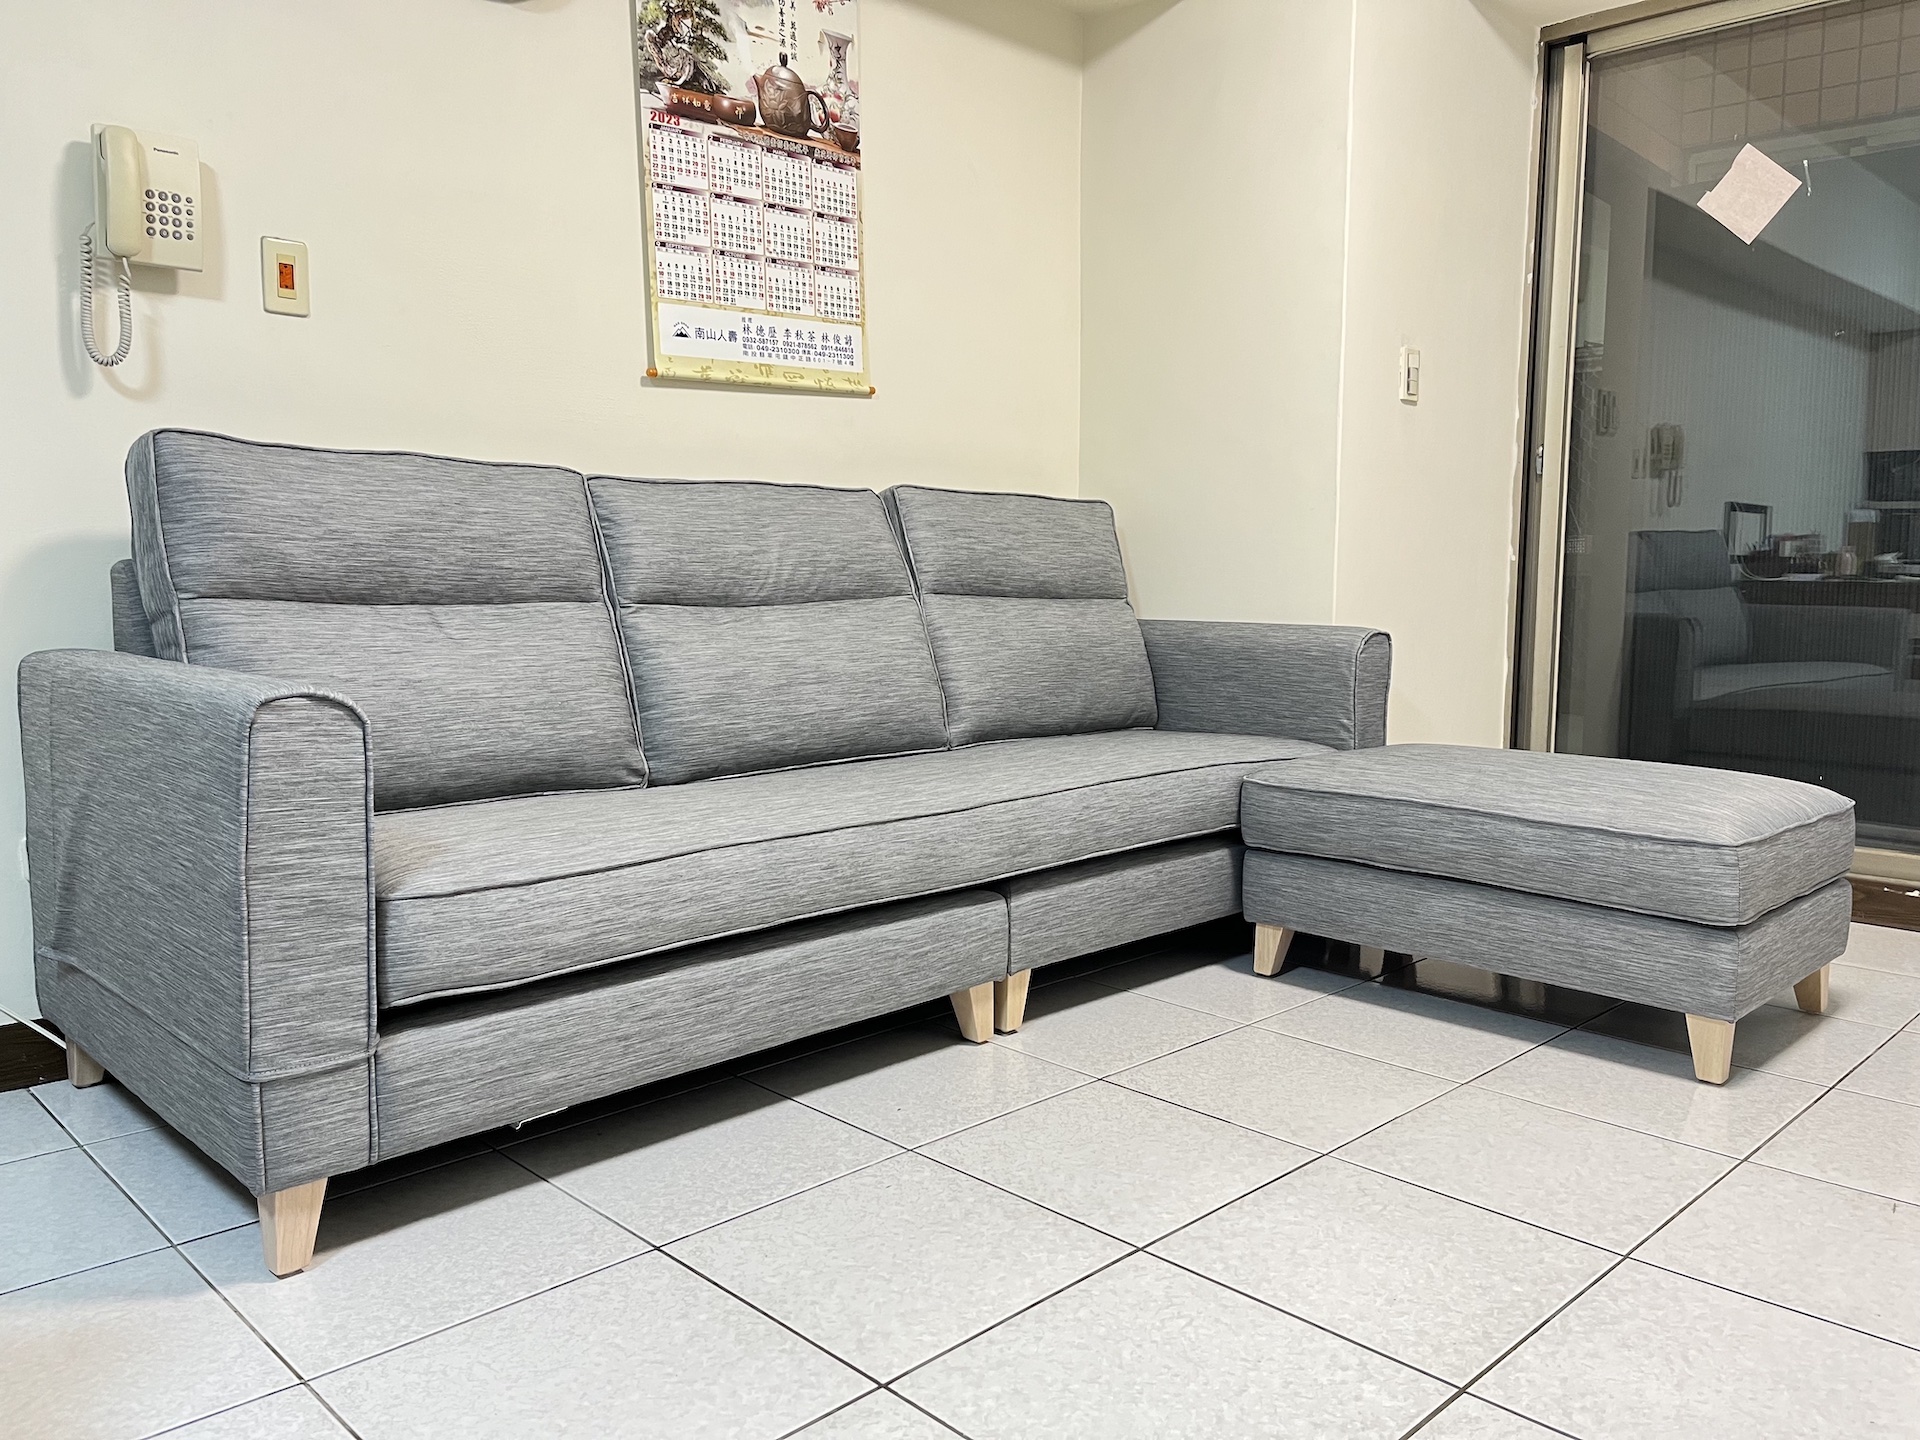 【客戶案例分享】台中貓抓布Ｌ型沙發訂製